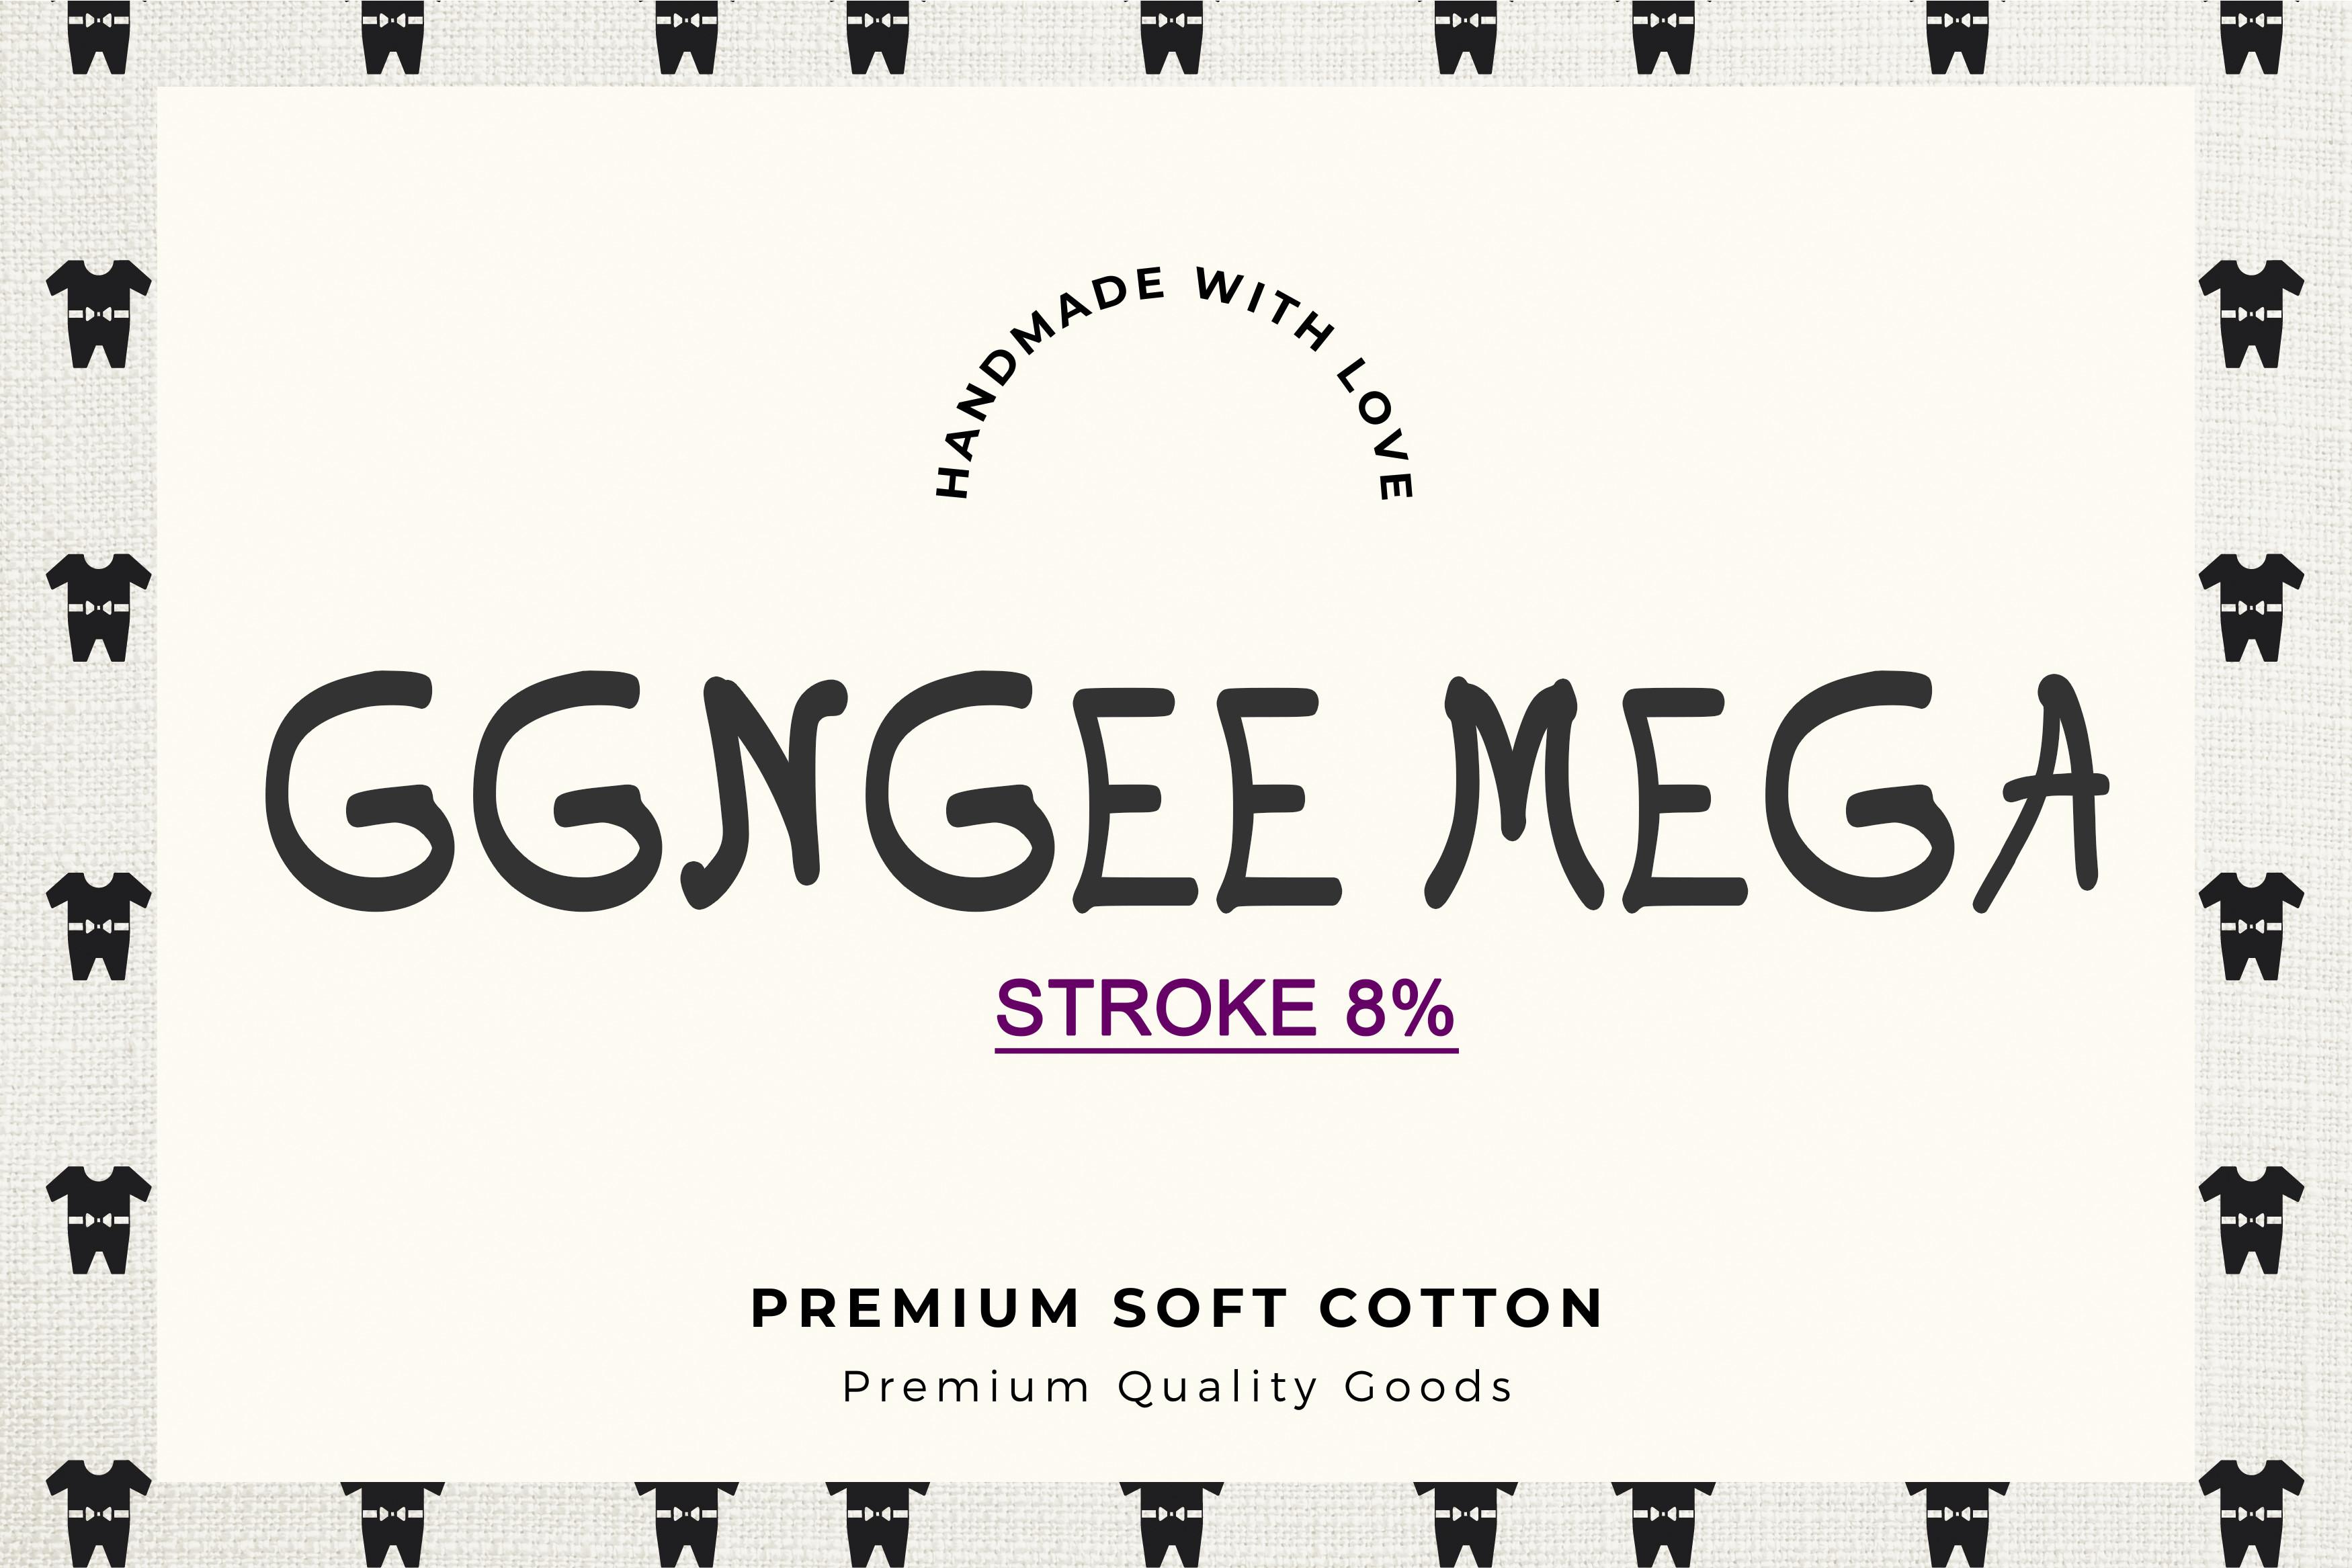 Ggngee Mega Font